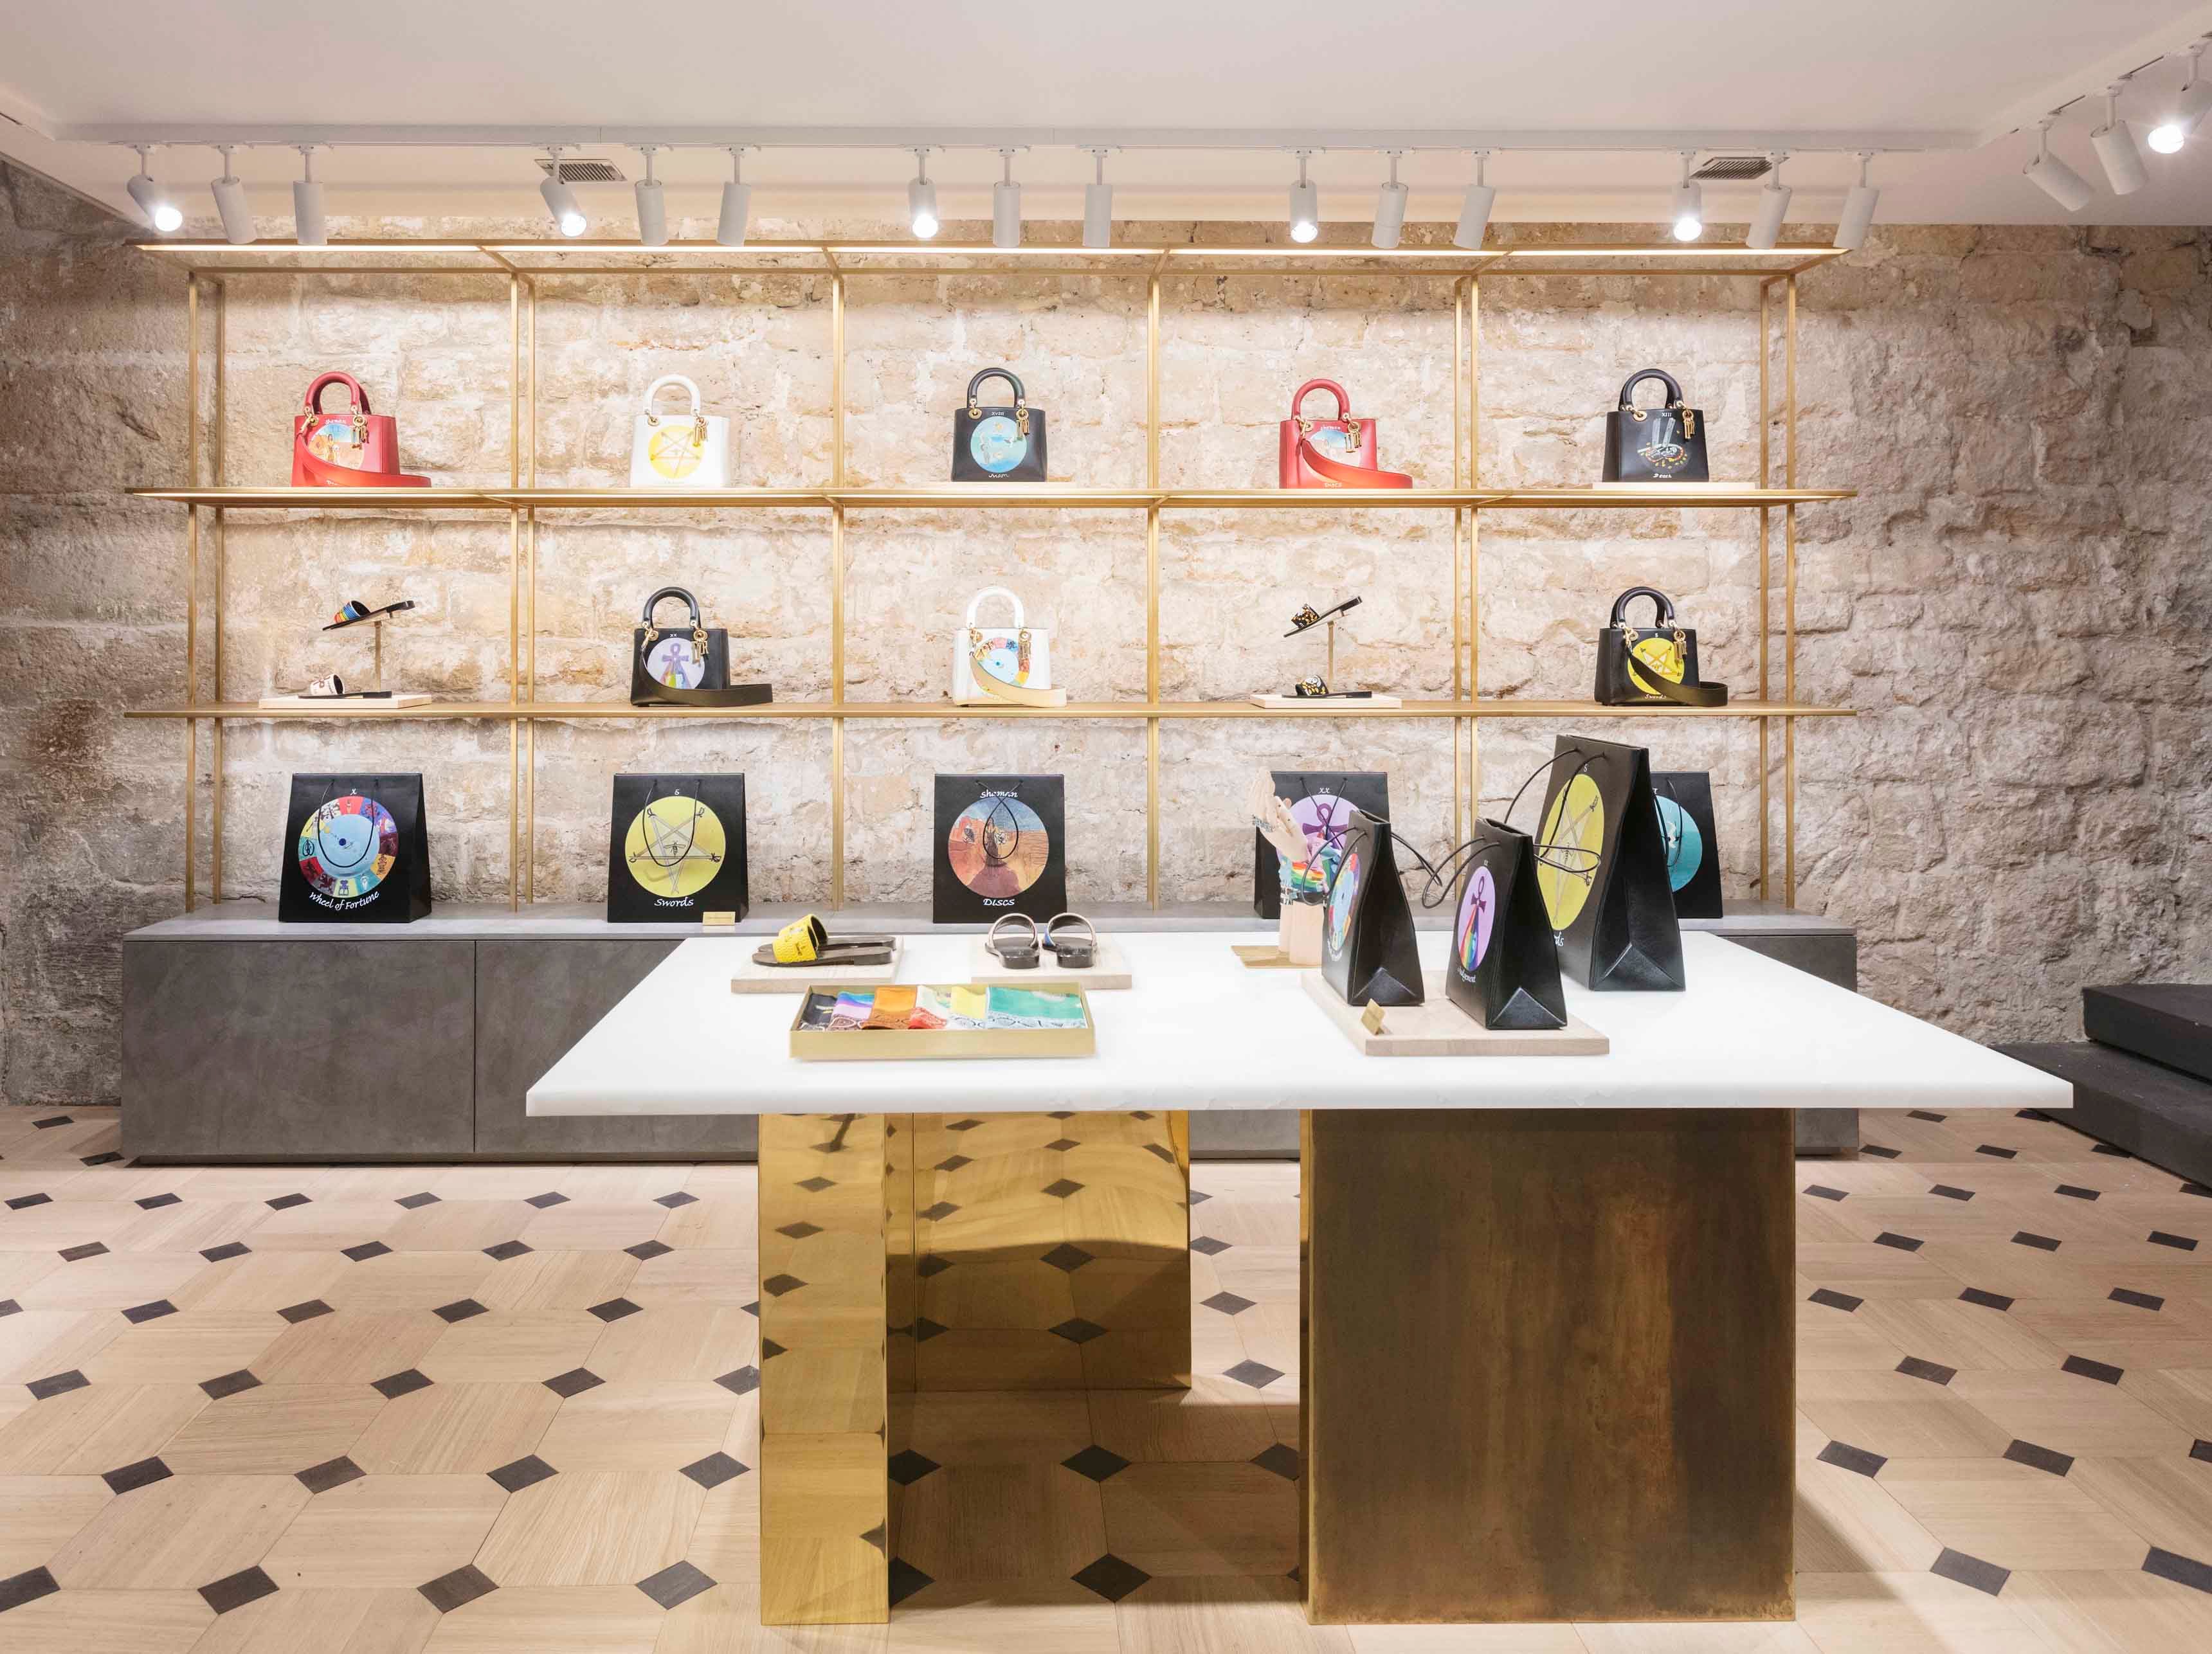 Que nous réserve le nouveau pop-up store de Dior rue Saint Honoré ?